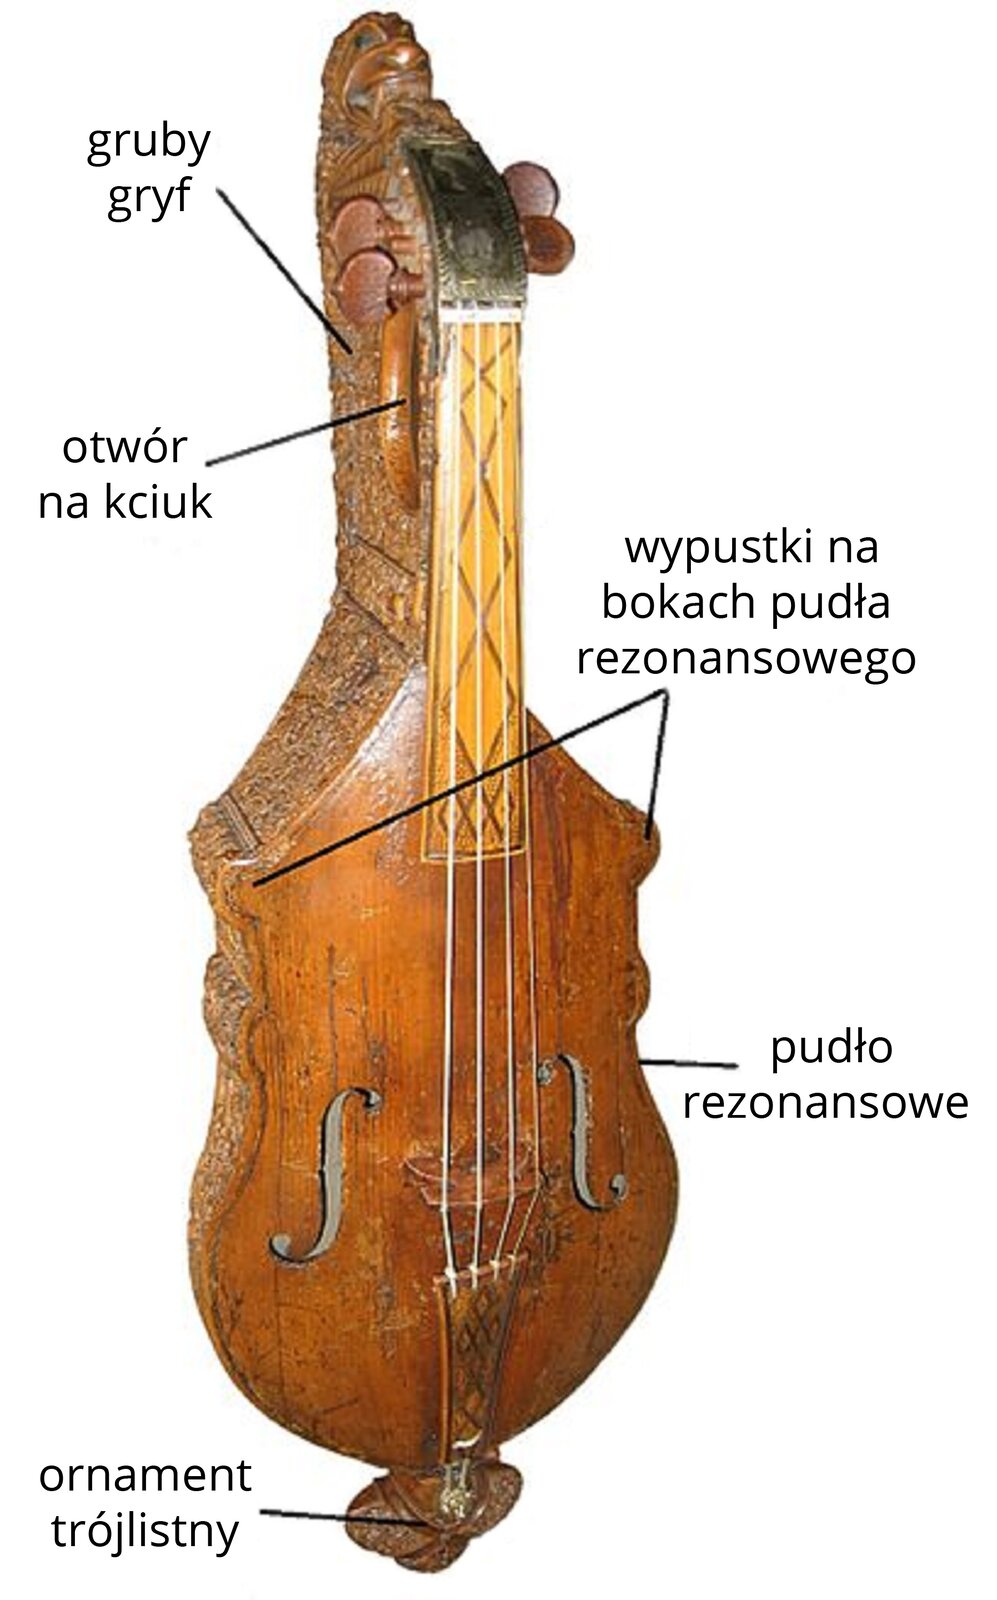 Zdjęcie przedstawia Citolę z Warwick. Jest to drewniany instrument strunowy. Instrument jest w kolorze brązowym. Posiada gruby gryf, otwór na kciuk. Na bokach pudła rezonansowego posiada wypustki  a na dole ozdobiony jest trójlistnym ornamentem.